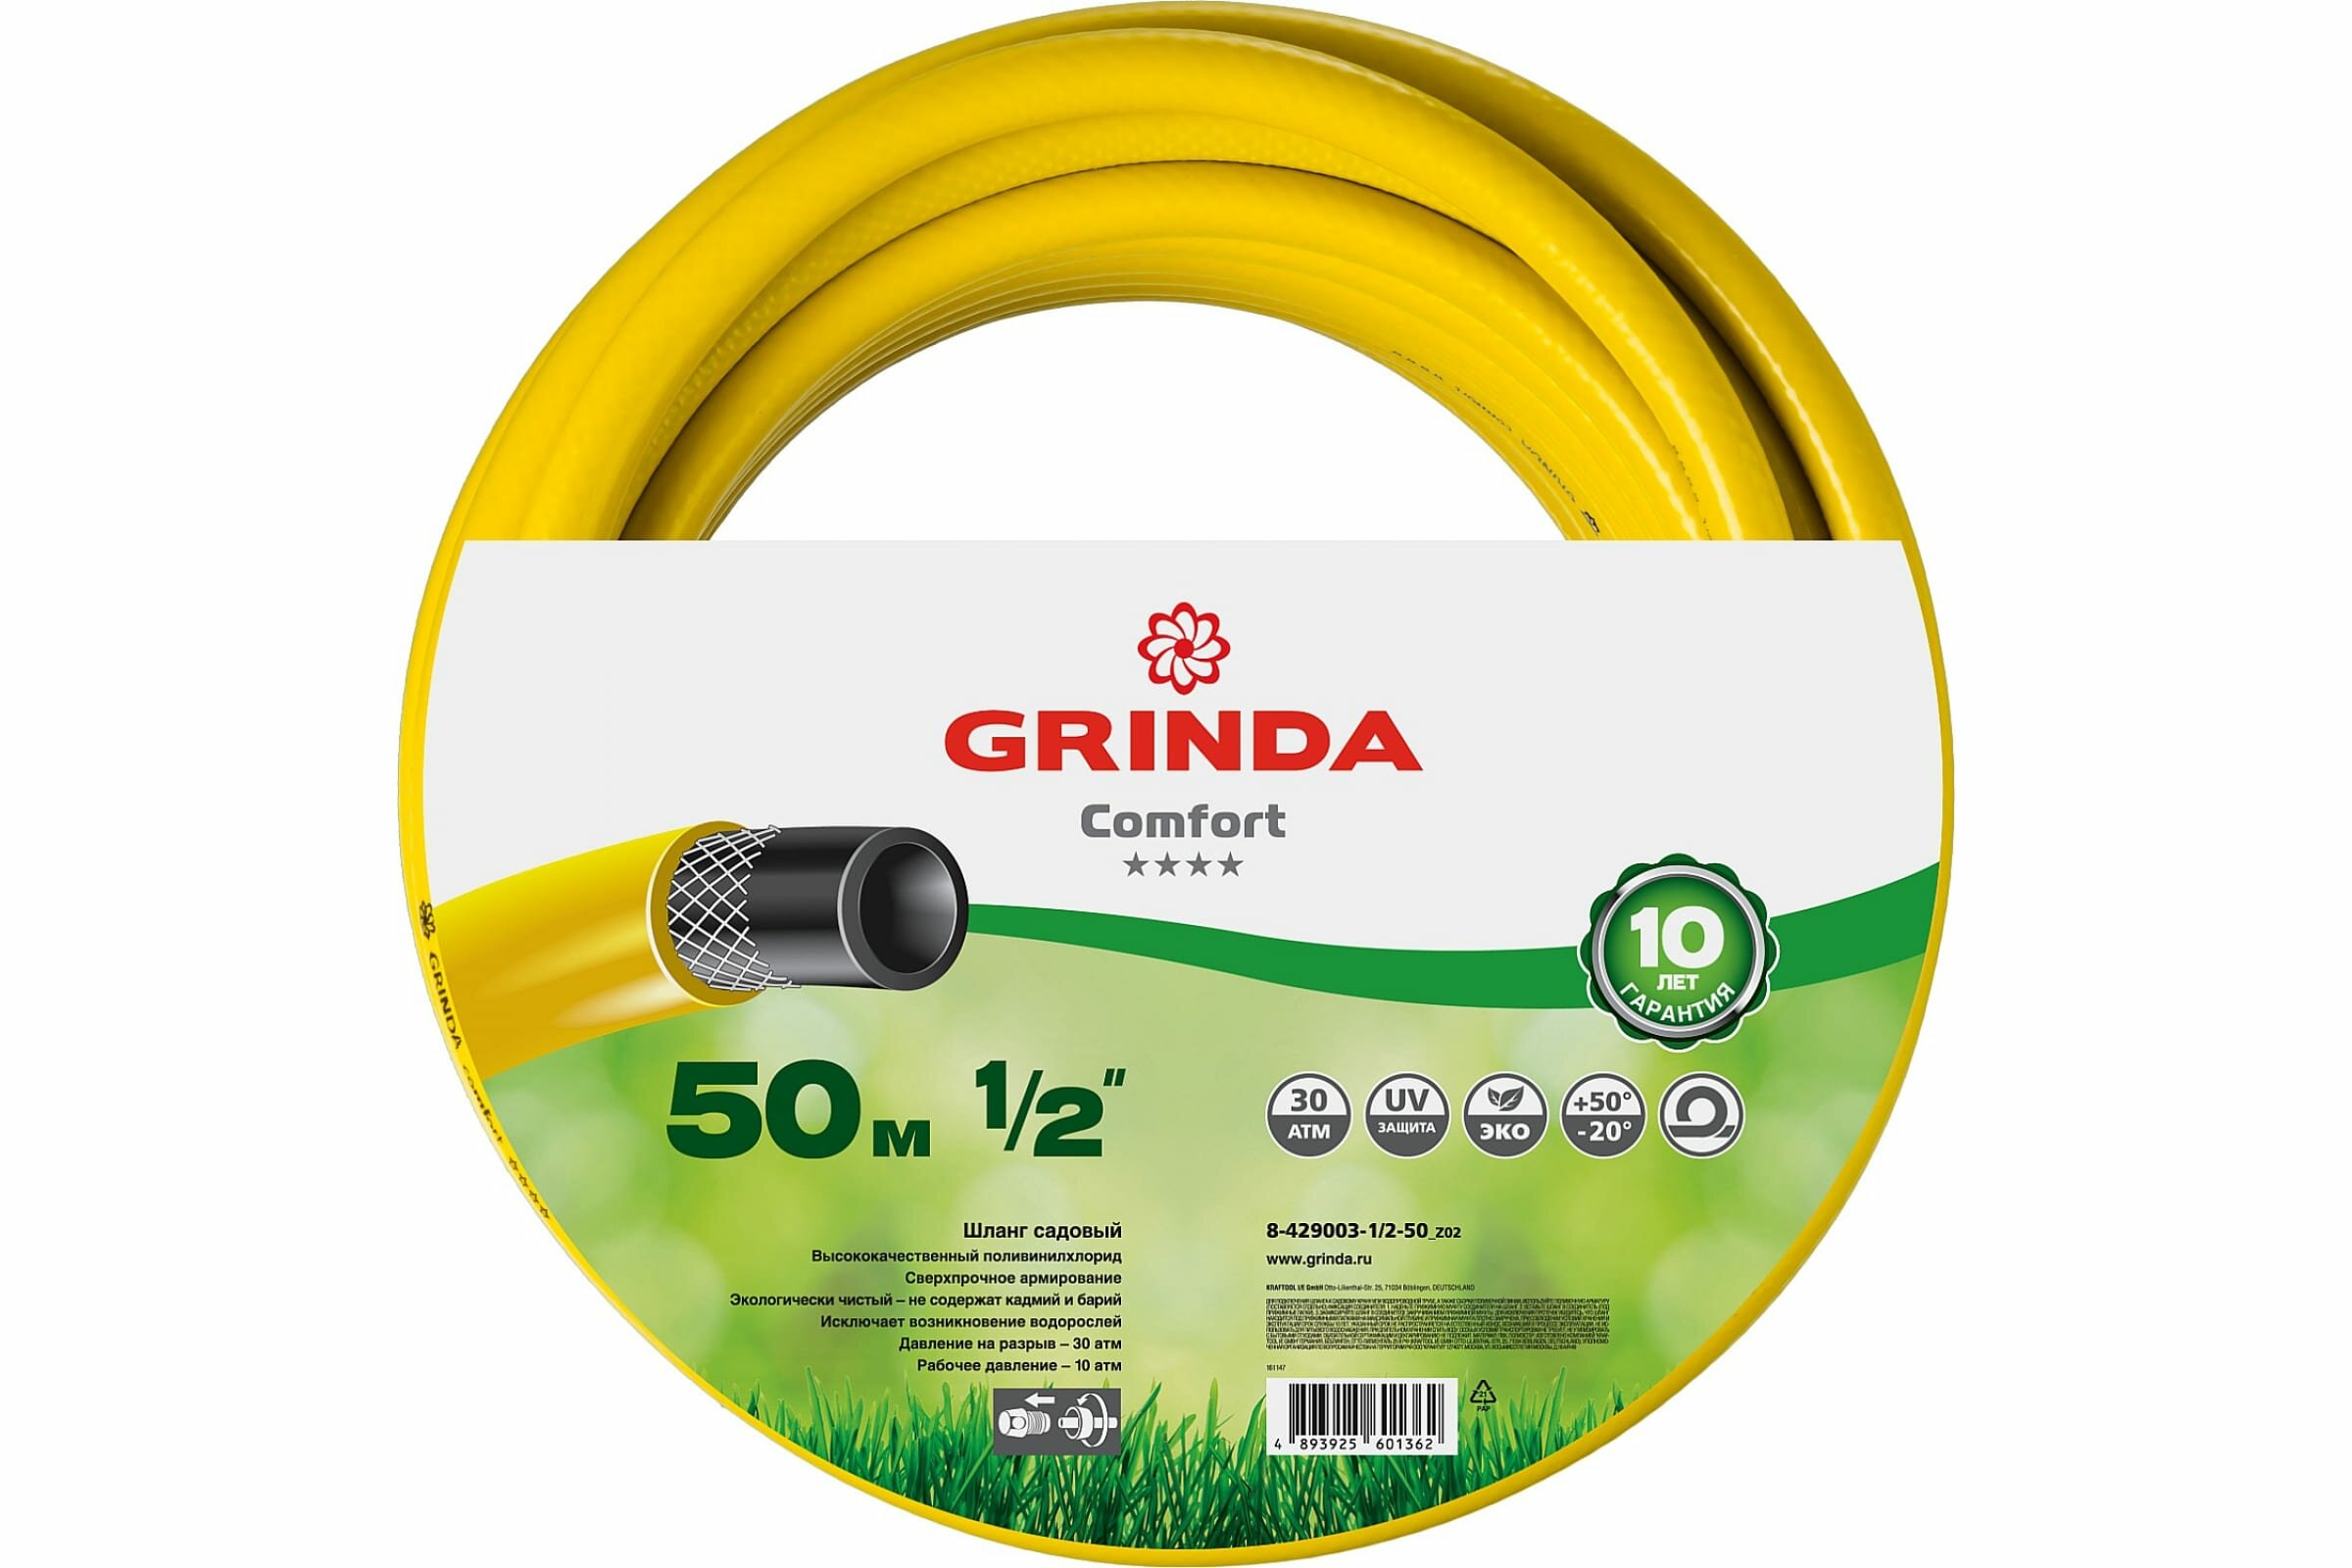 Шланг GRINDA COMFORT 1/2"х50м поливочный, 30 атм., армированный, 3-х слойный (8-429003-1/2-50)